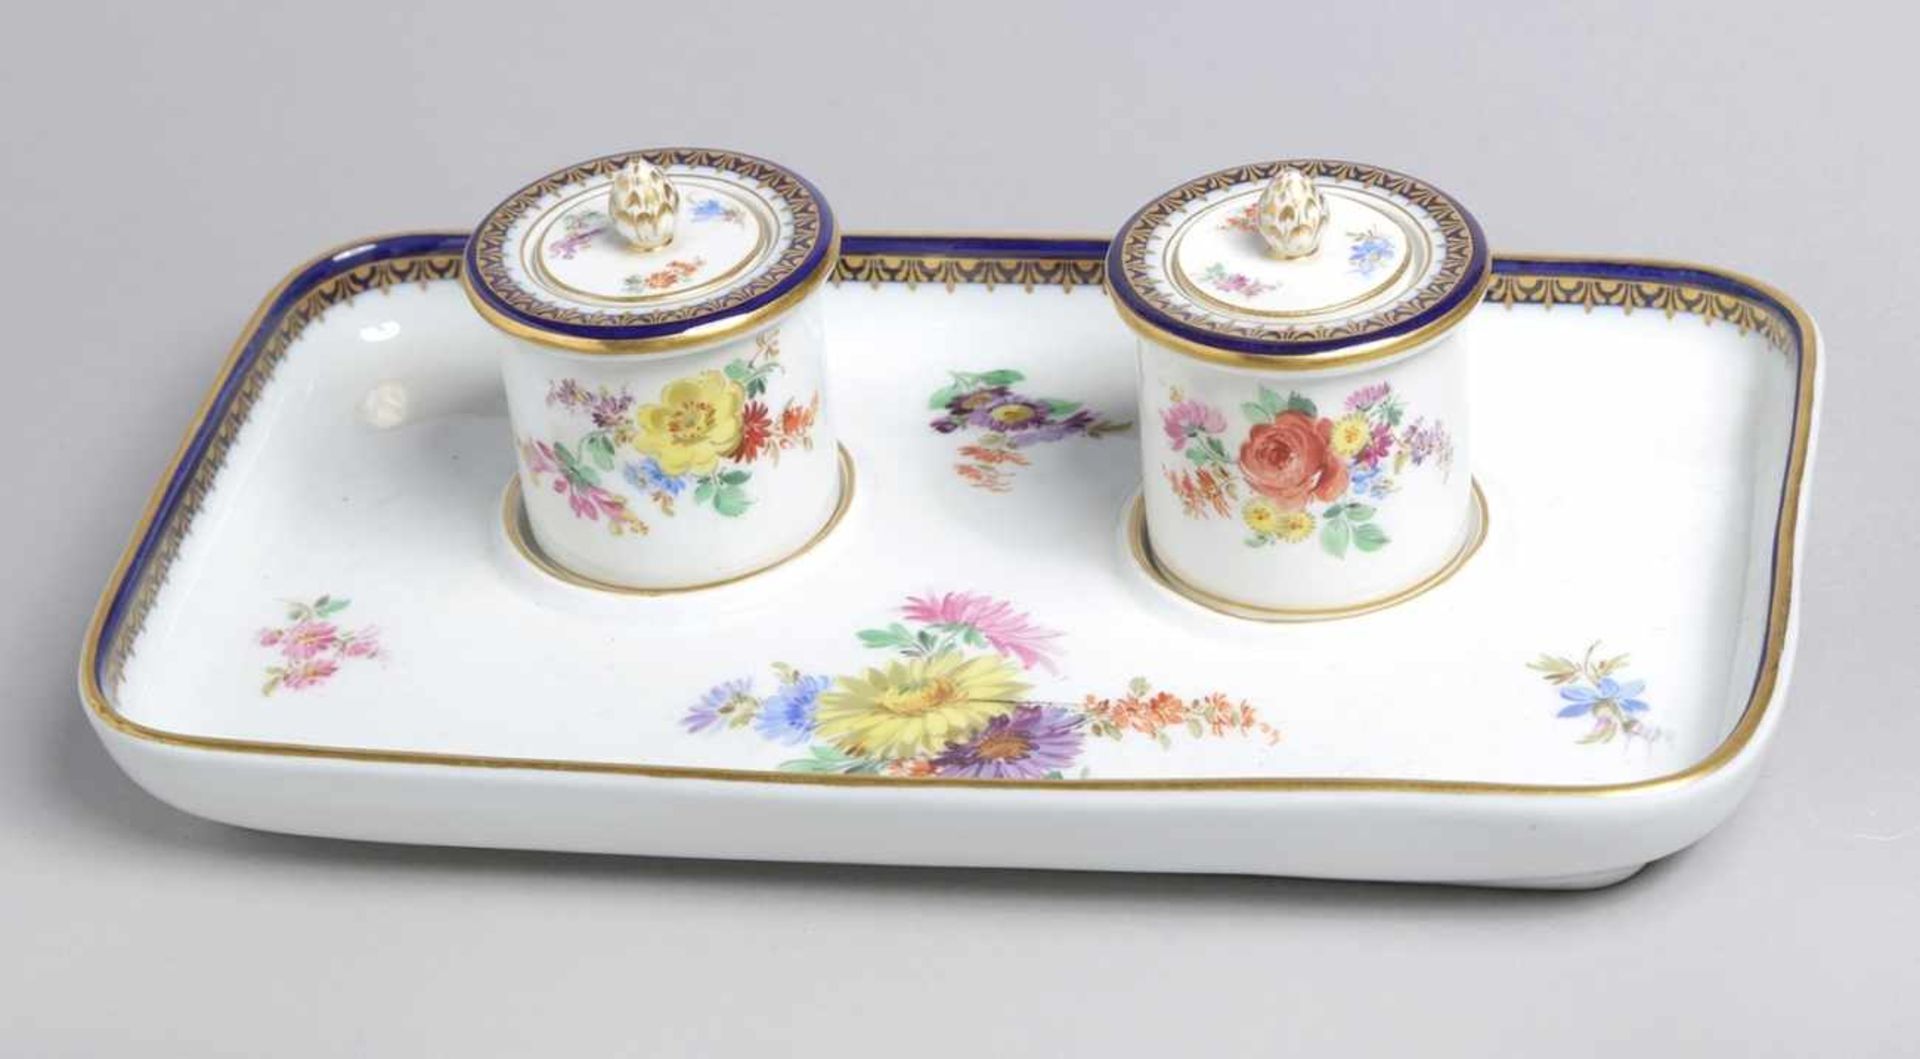 Porzellan-Tintenzeug, Meissen, um 1900, rechteckige Form mit 2 Tintenfaßbehältern, Wandungbemal